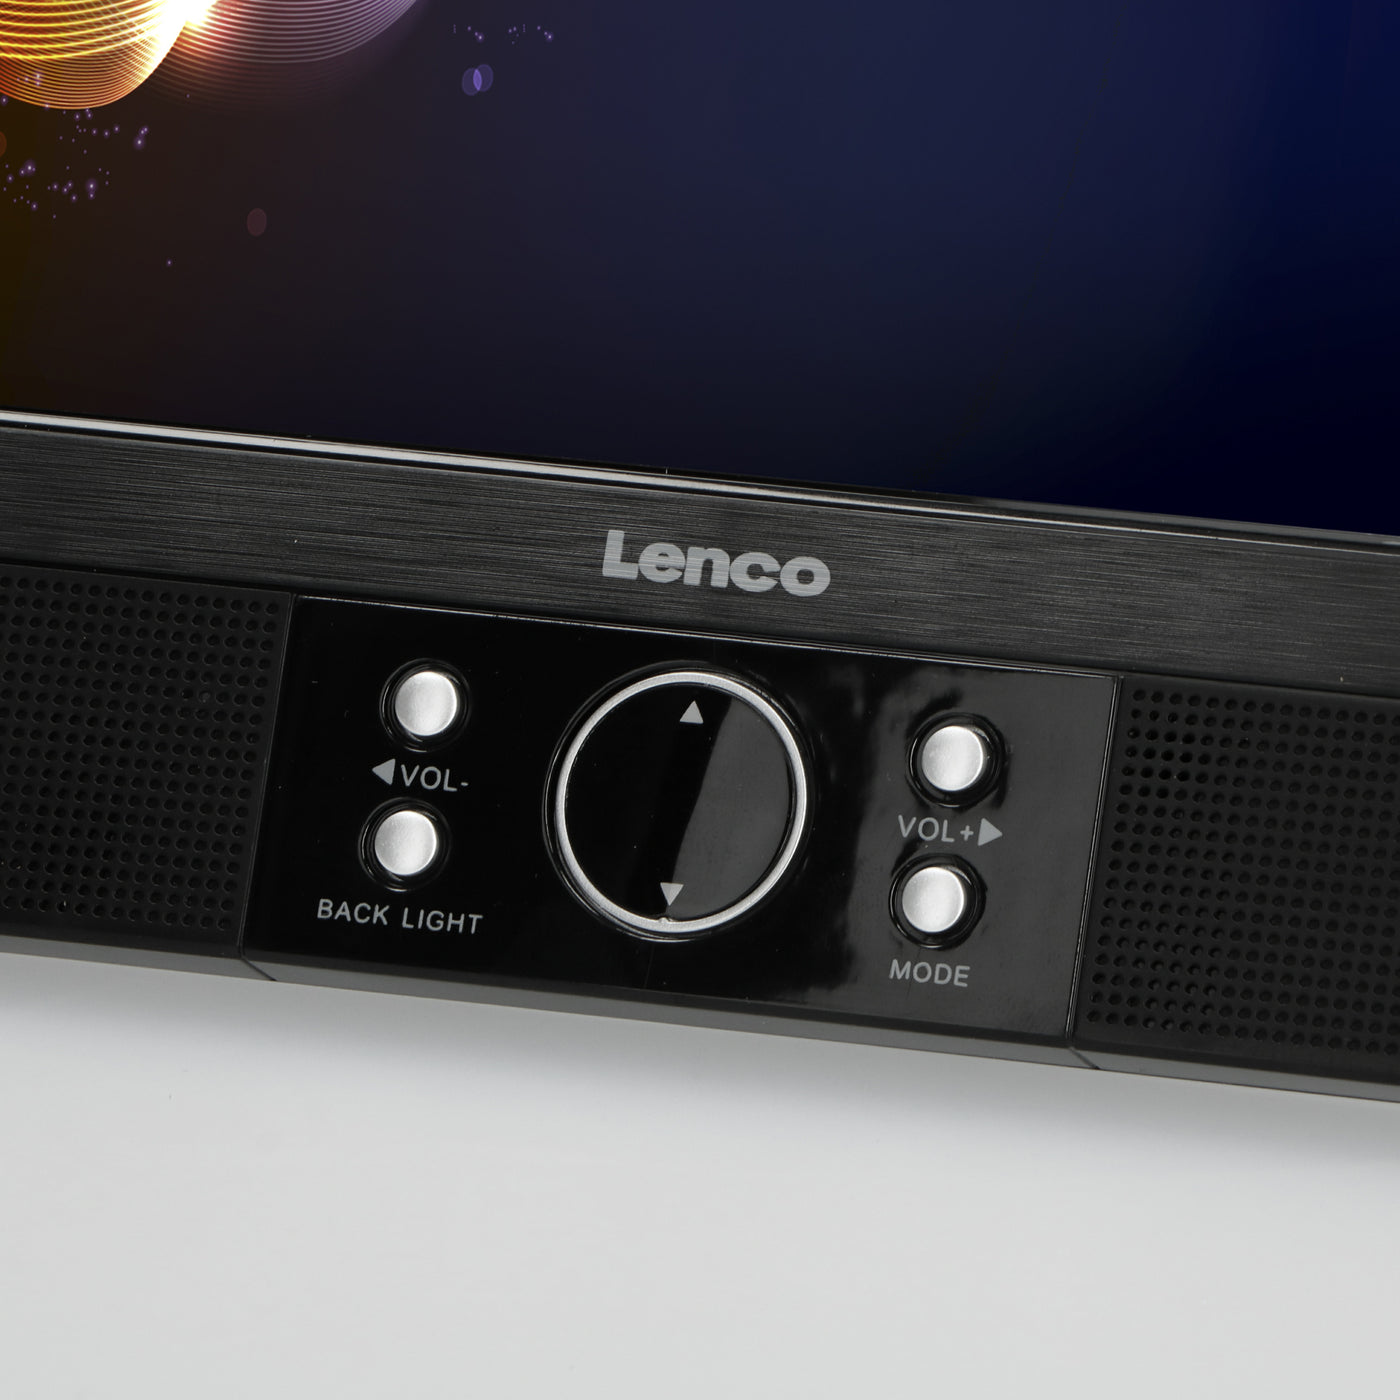 LENCO MES-405 - Przenośny odtwarzacz DVD z dwoma ekranami i portem USB 9" - Czarny